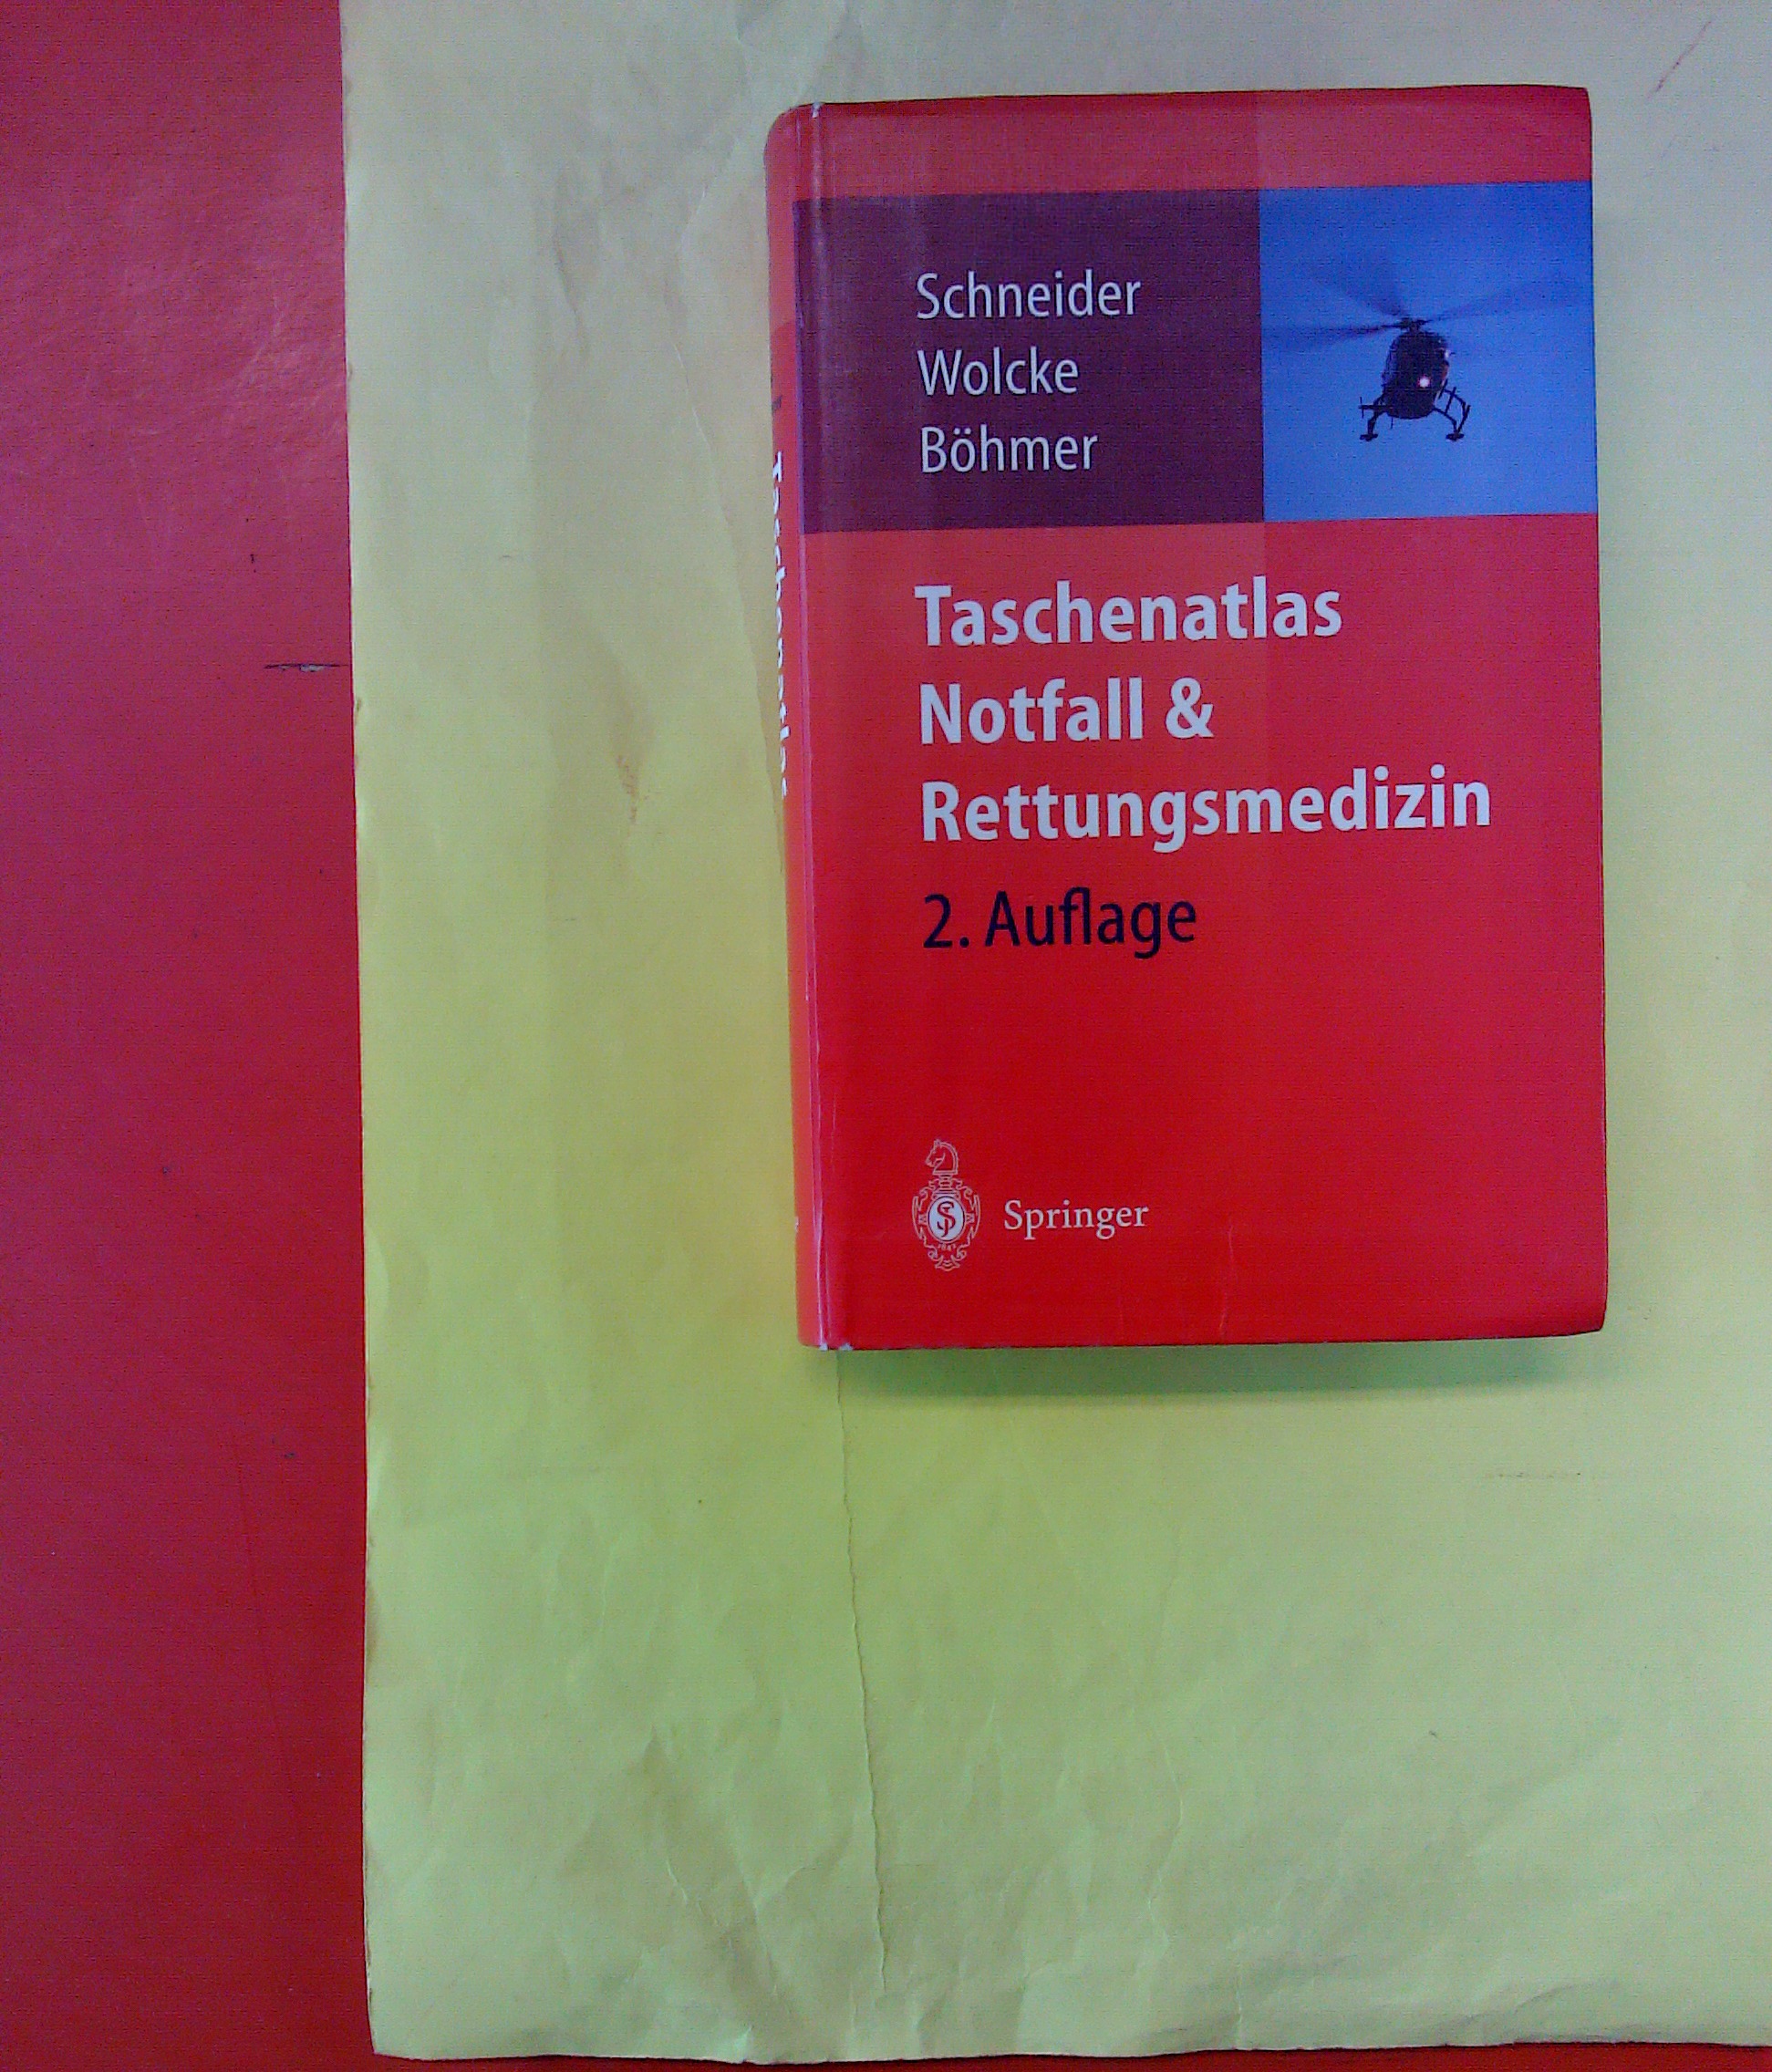 Taschenatlas Notfall & Rettungsmedizin: Kompendium für den Notarzt - 2., aktualisierte und erweiterte Auflage - Thomas Schneider / Benno Wolcke / Roman Böhmer / u.a.